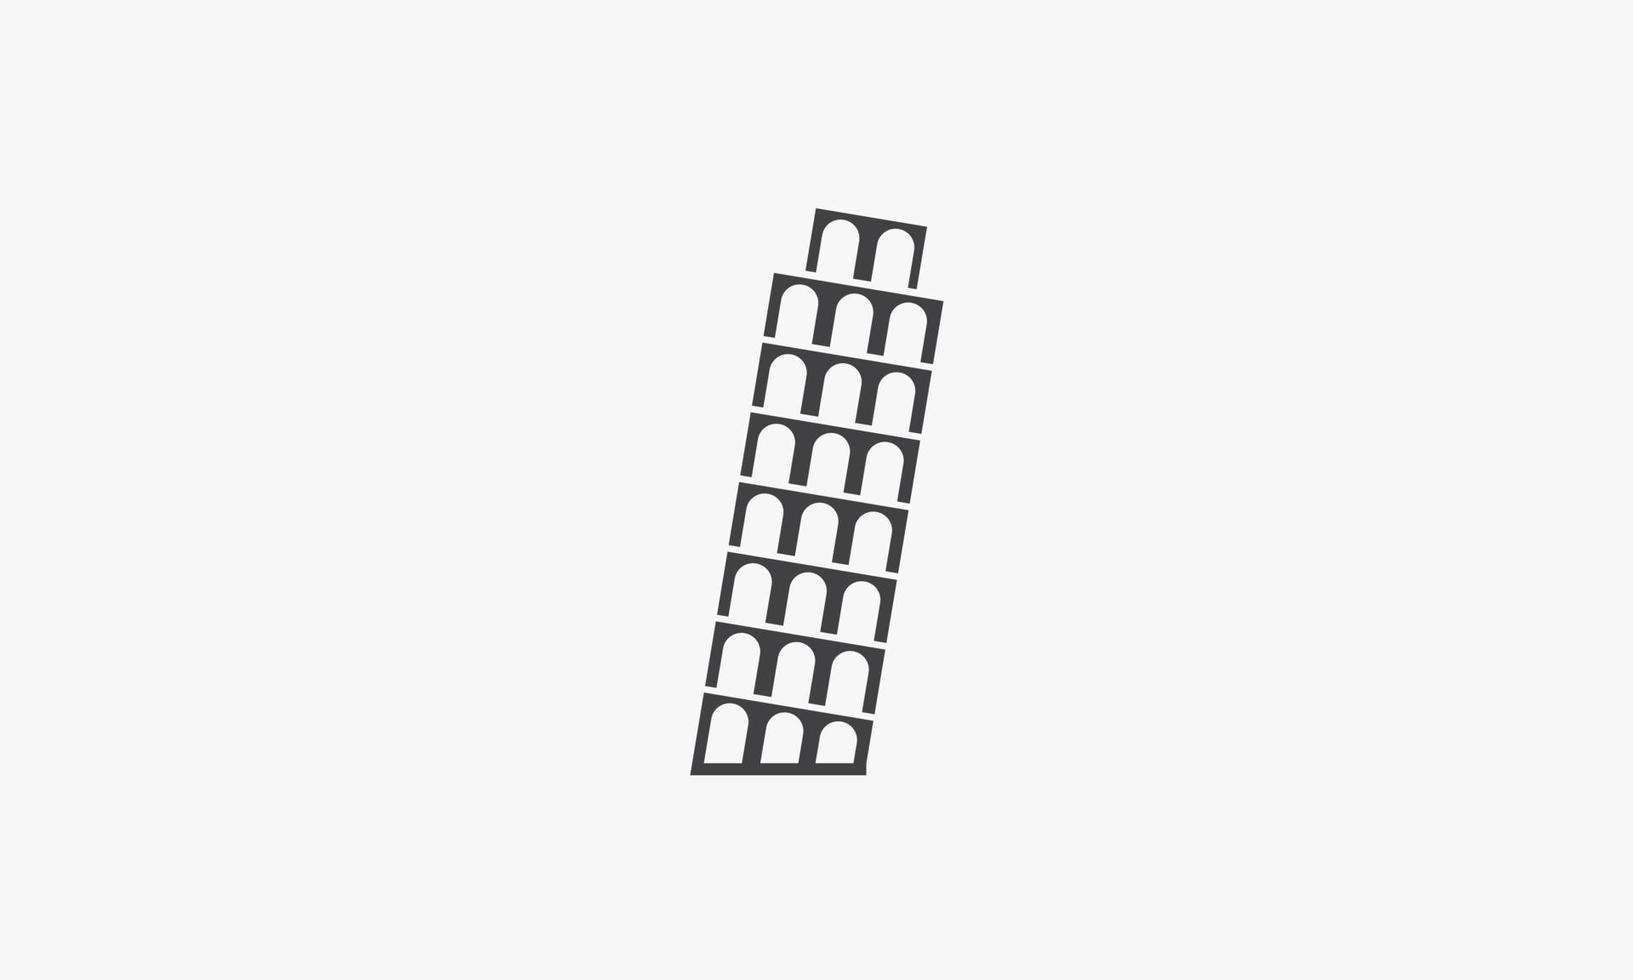 Pizzaturm-Gebäude-Symbol. isoliert auf weißem Hintergrund. Vektor-Illustration. vektor